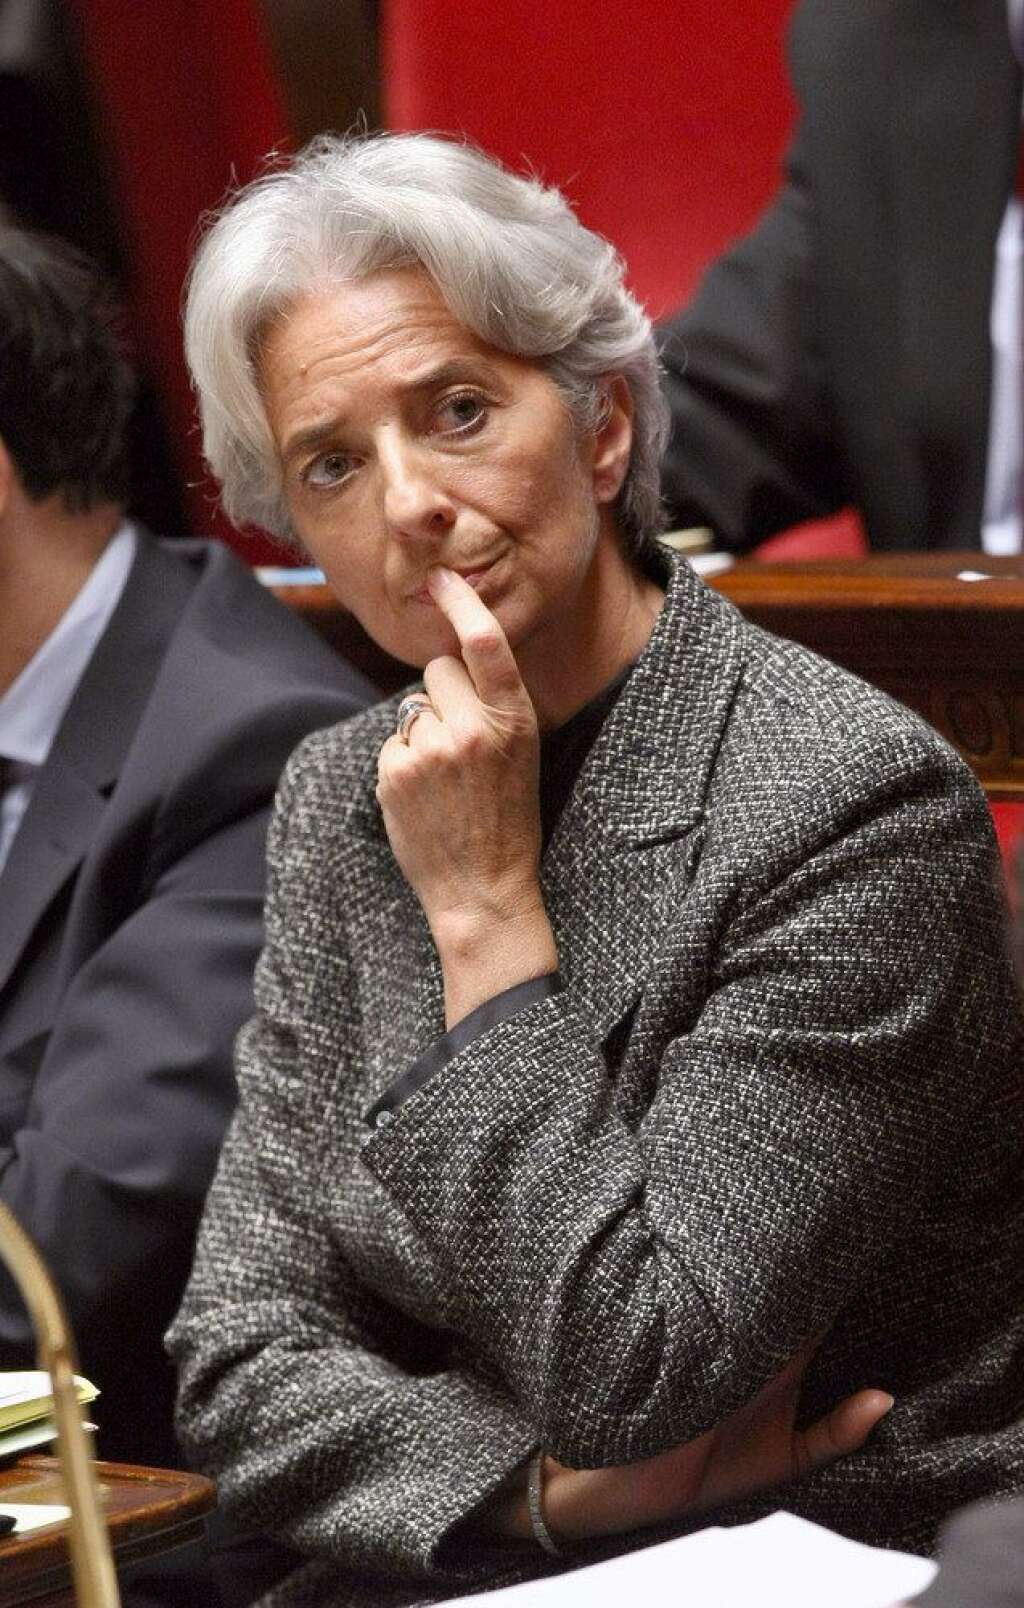 QUAND LAGARDE PARLAIT DE RIGUEUR... - Le 2 septembre, la ministre de l'Economie Christine Lagarde parle d'un "plan de rigueur" à propos des baisses d'effectifs dans la Fonction publique. "Il n'y a pas de plan de rigueur, il y a un effort constant pour réduire les dépenses de l'Etat", corrige François Fillon le lendemain.